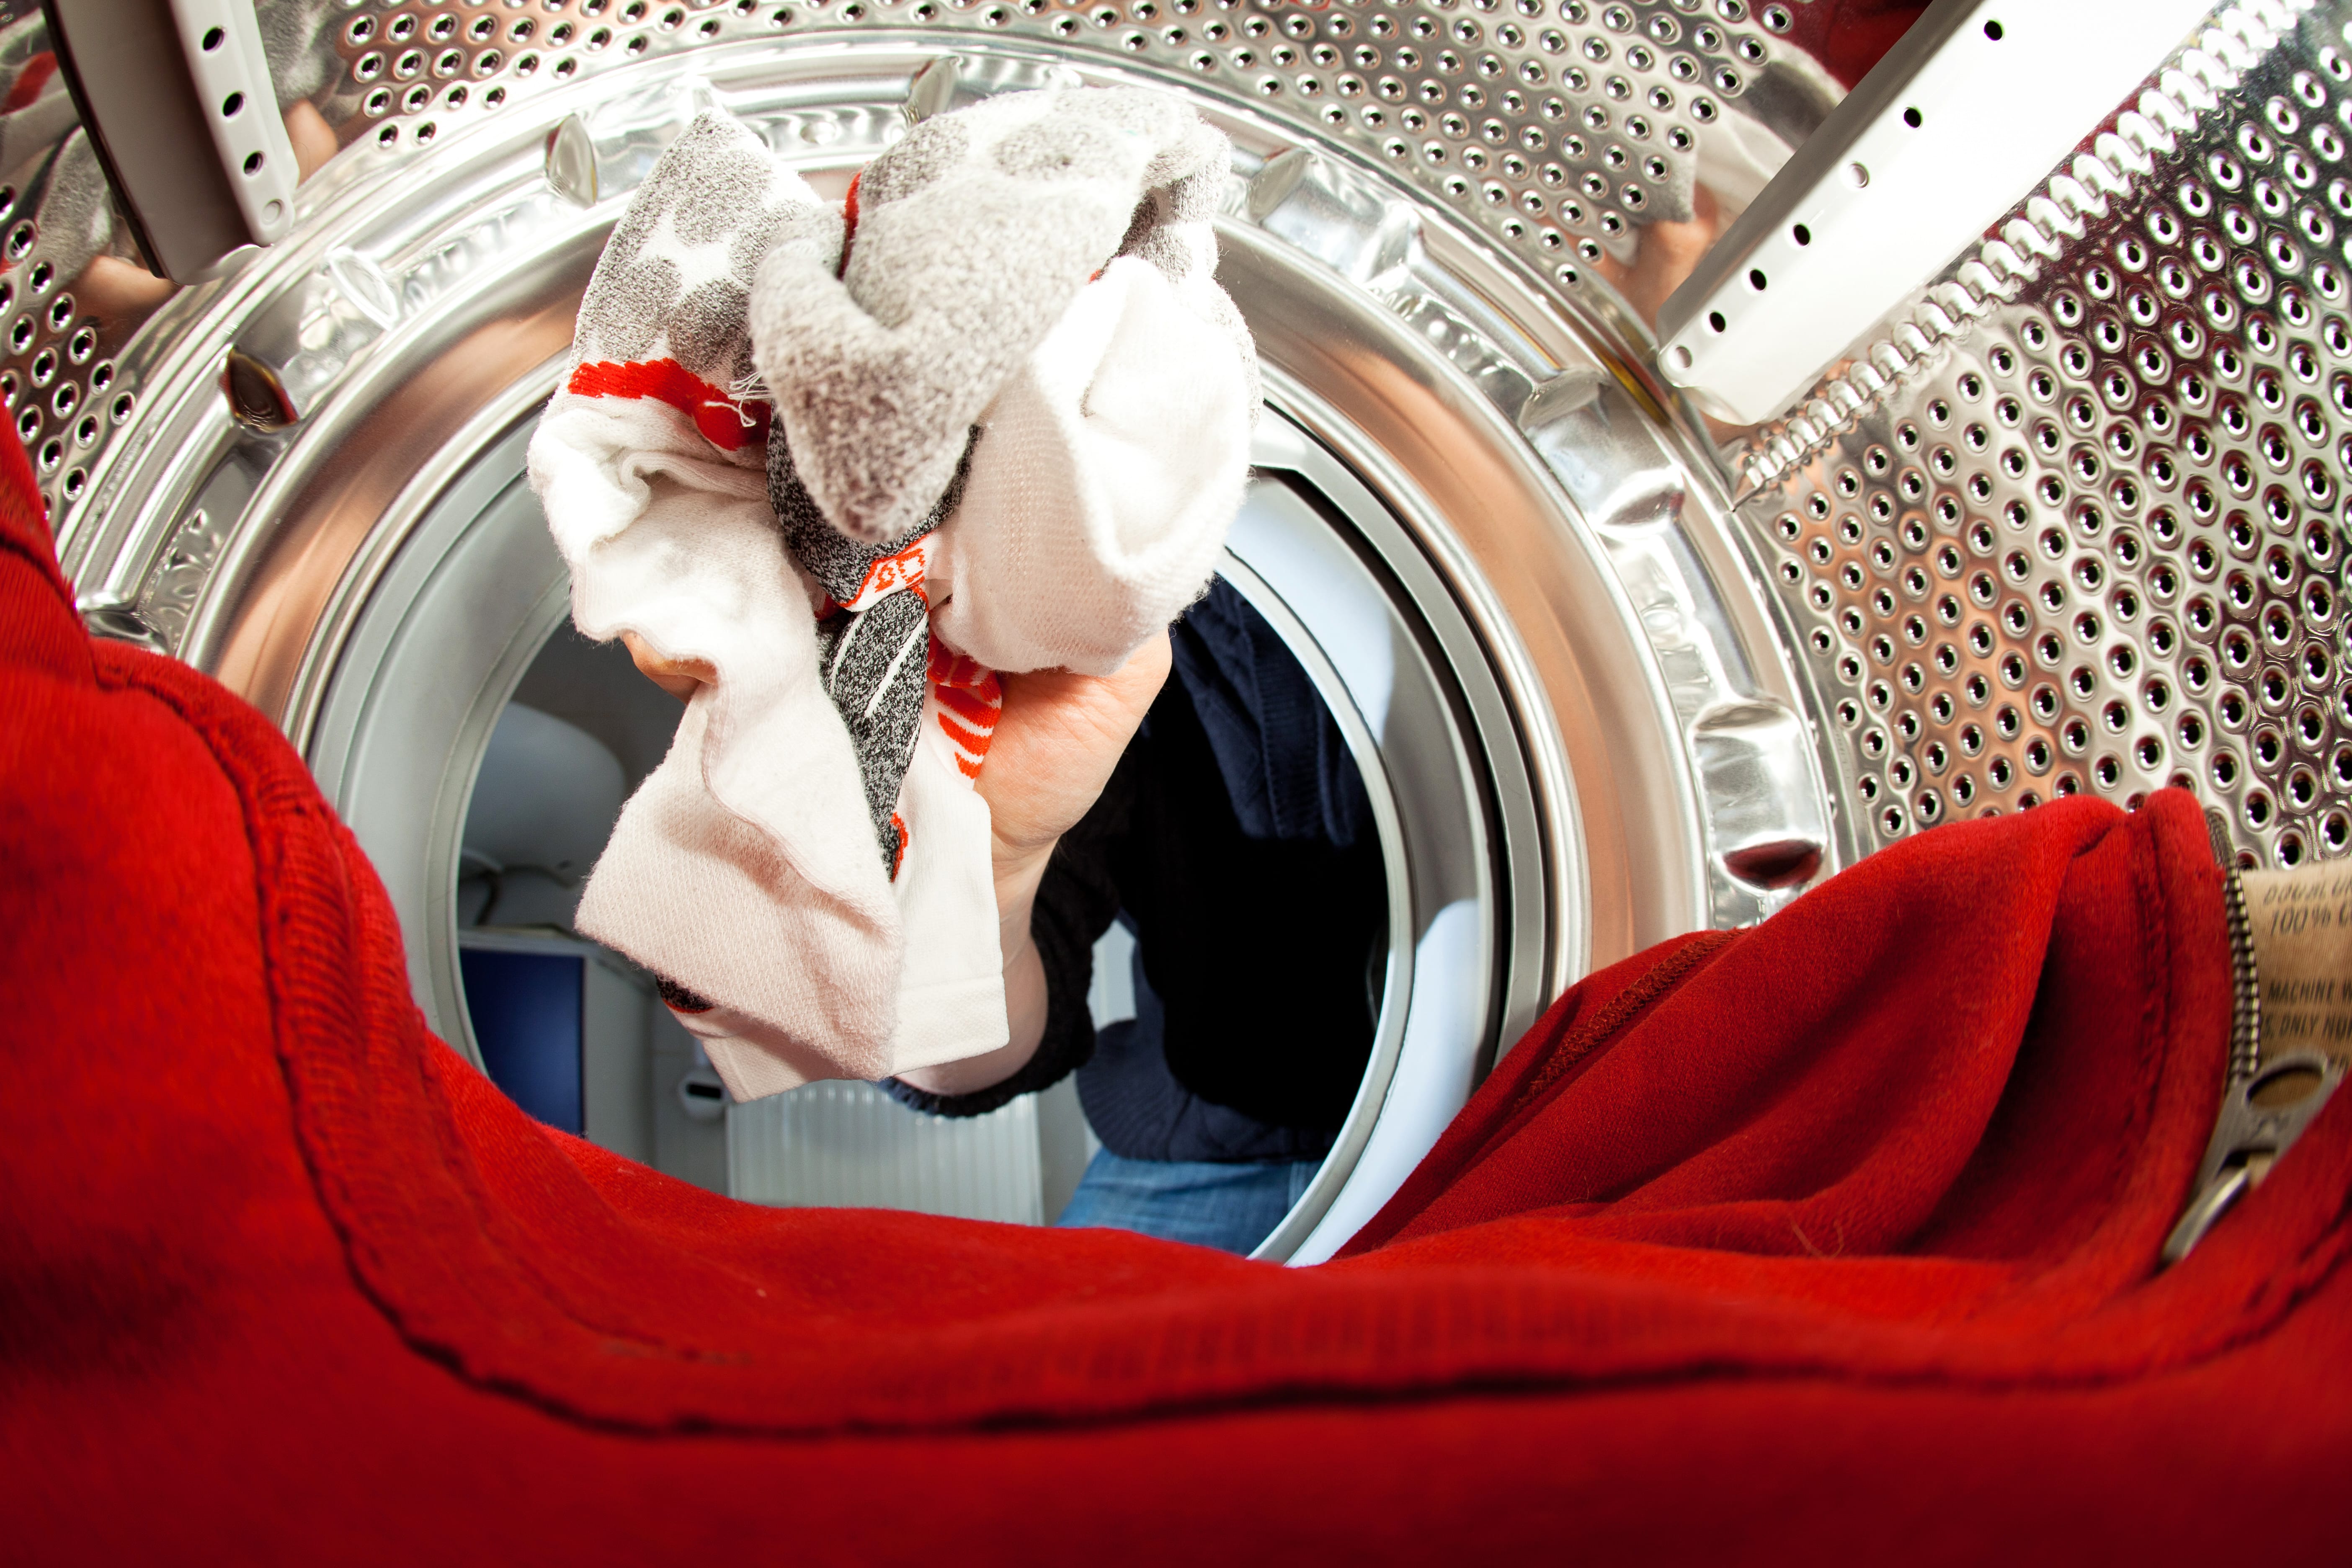 Weiße Socken waschen – So vermeiden Sie Verfärbungen